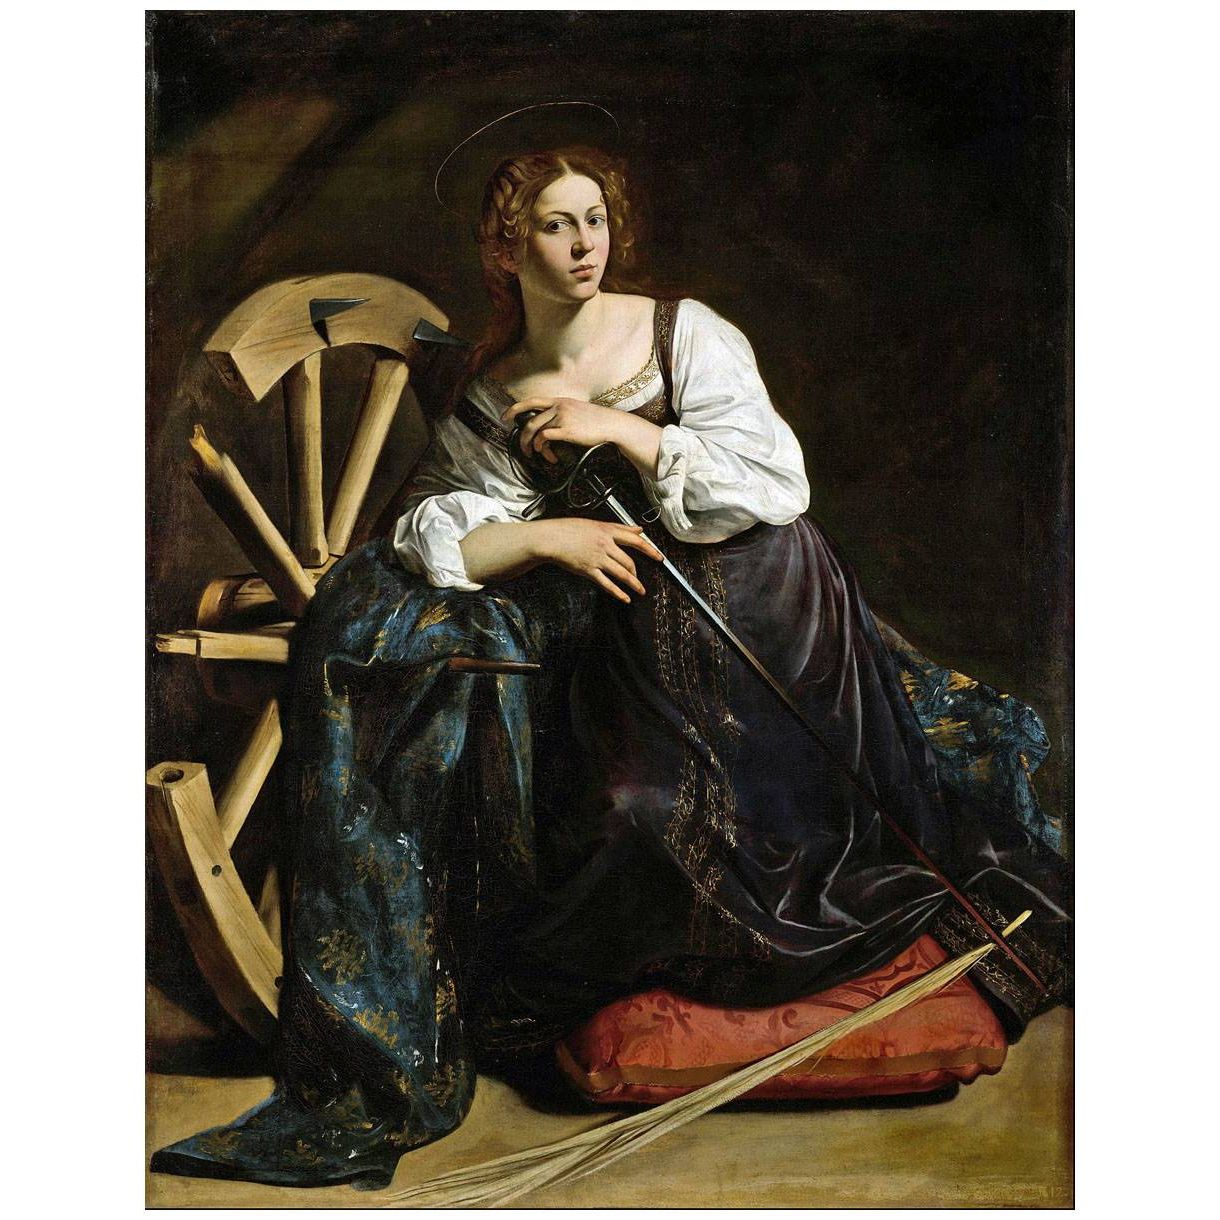 Caravaggio. Santa Caterina d'Alessandria. 1598. Thyssen-Bornemisza Museum Madrid